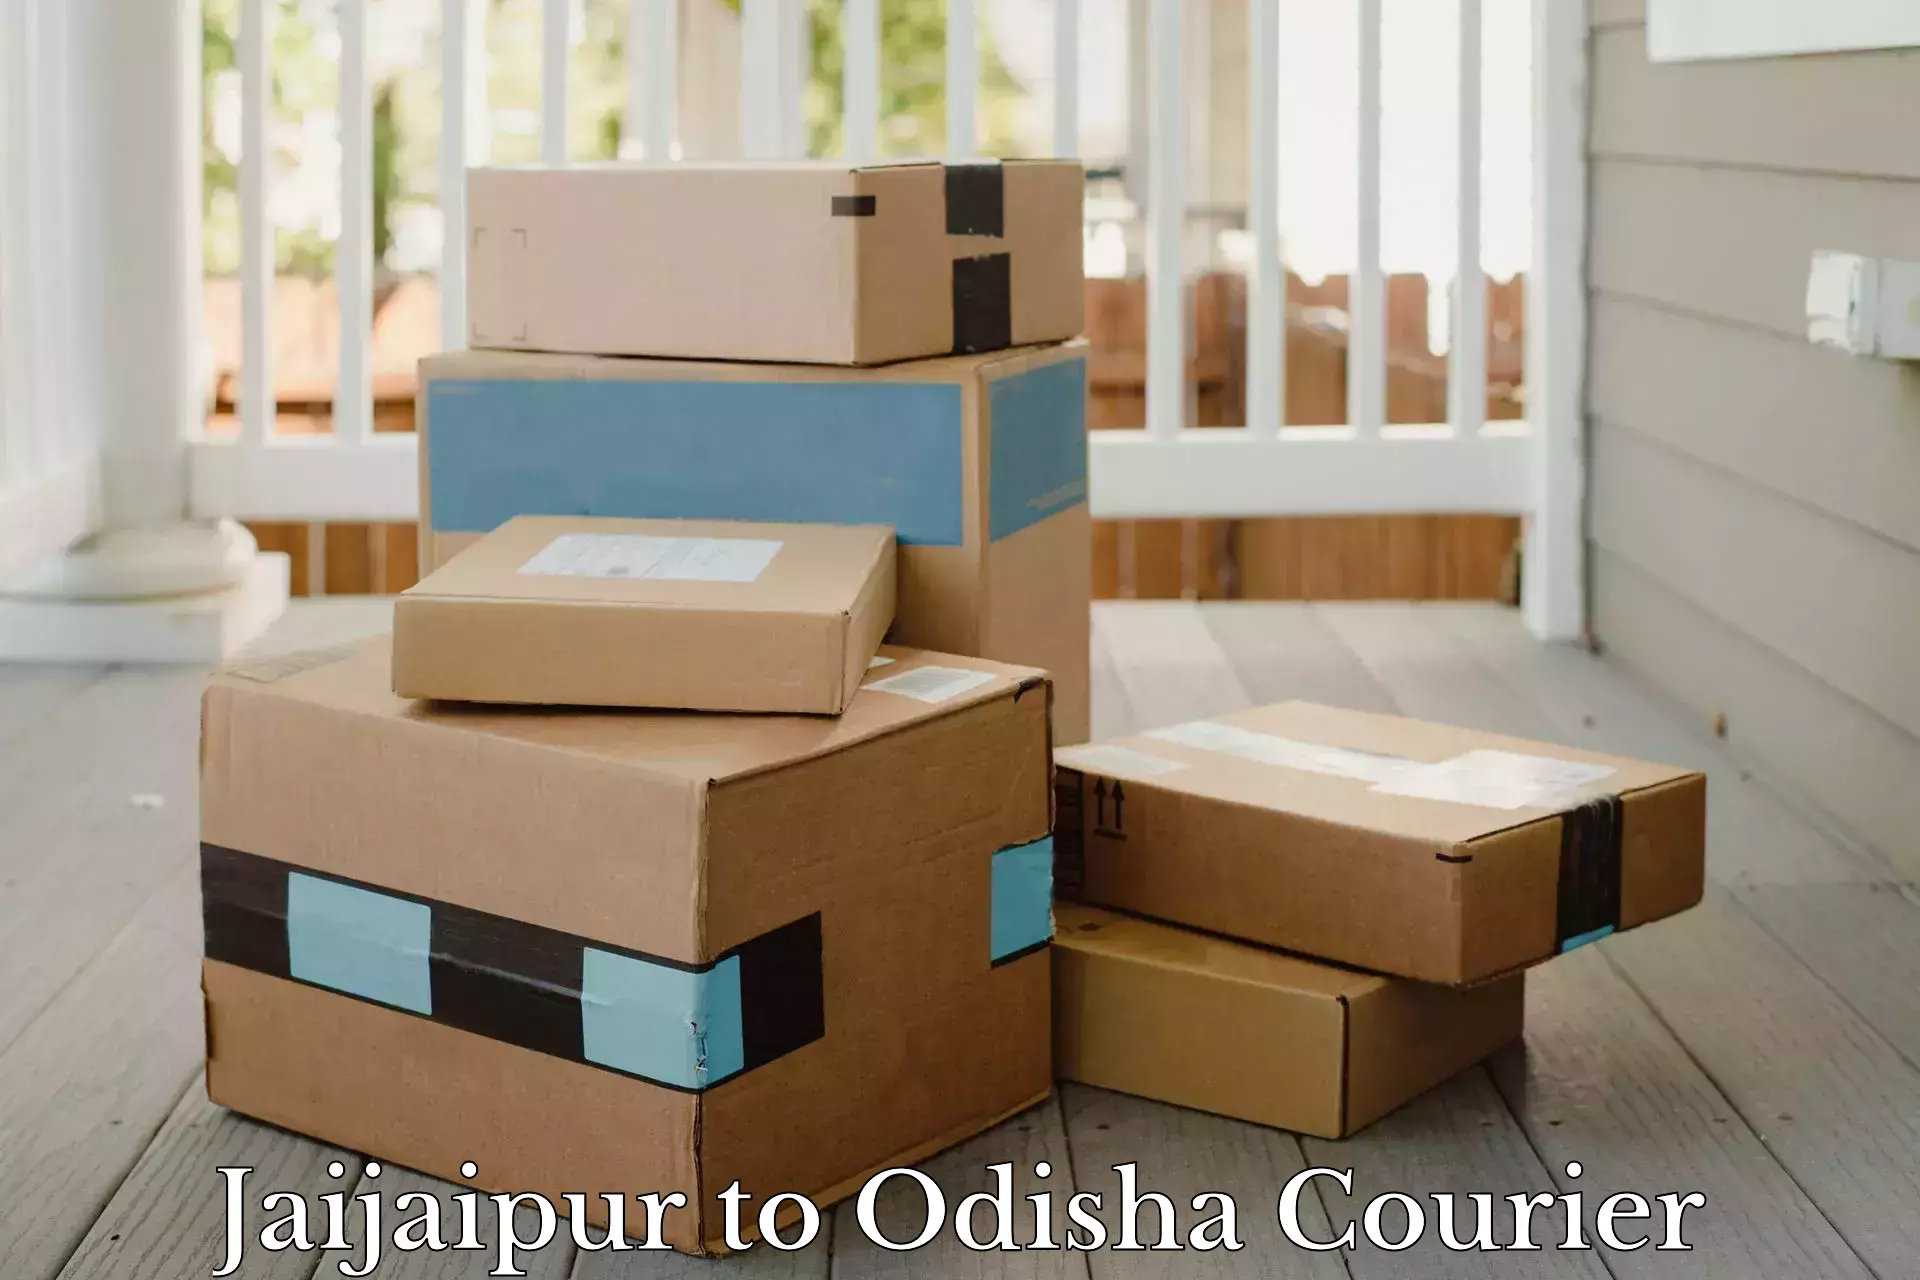 Customer-focused courier Jaijaipur to Kakiriguma